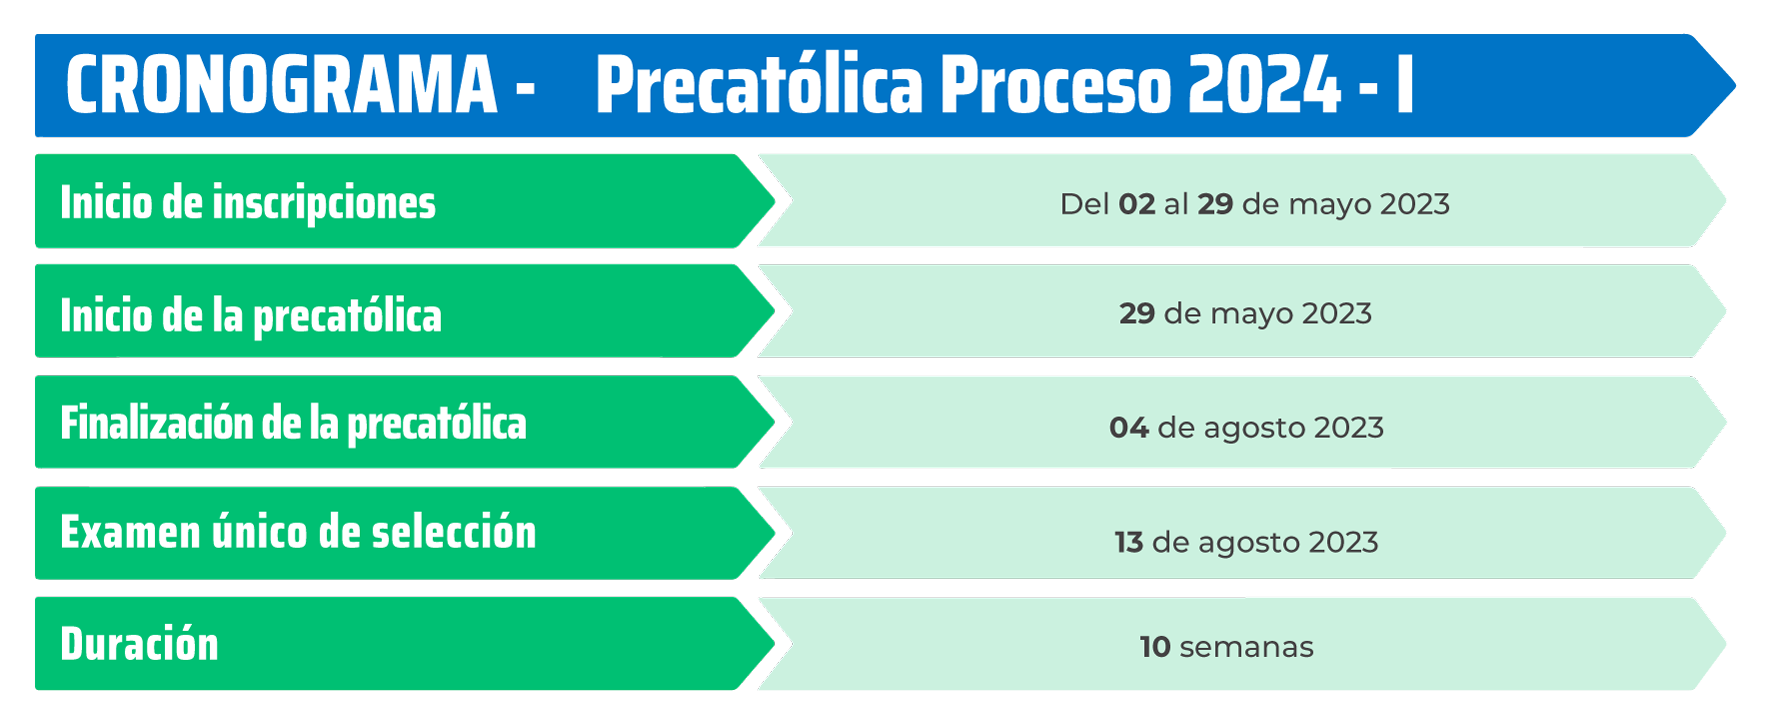 Precatólica Proceso 2024 I Universidad Católica de Santa María